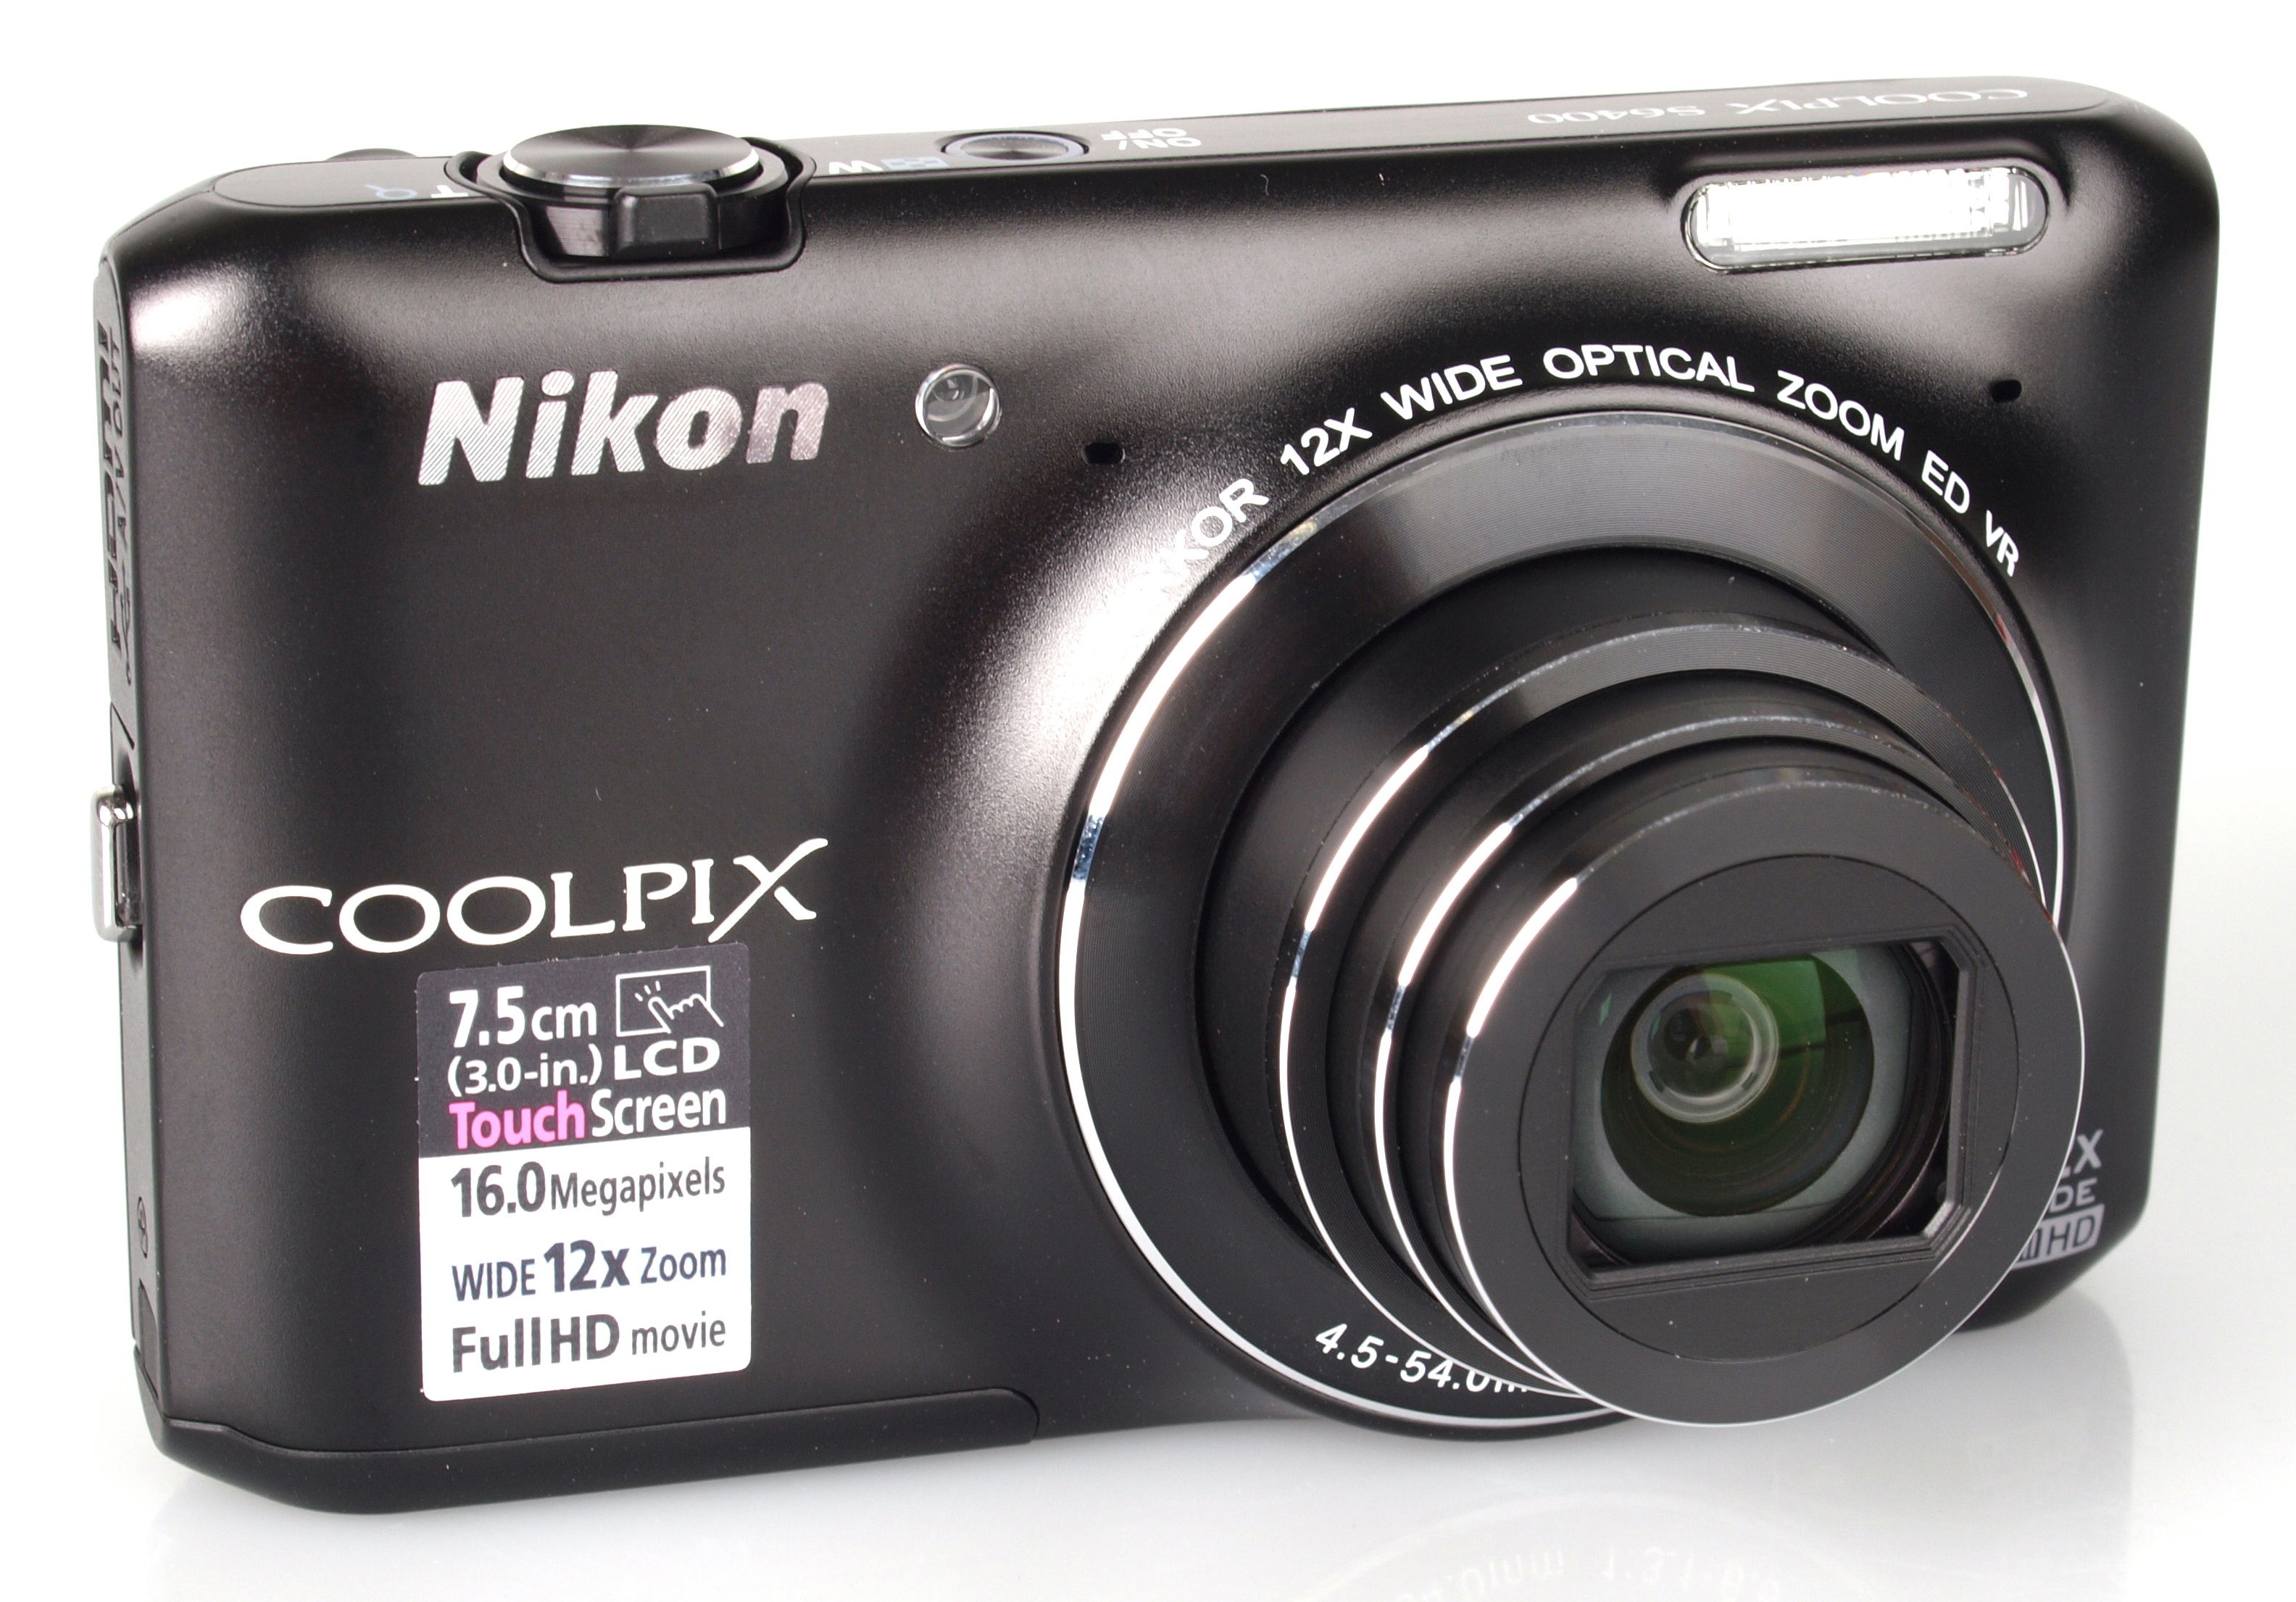 Nikon Coolpix S6400 Digital Camera Review